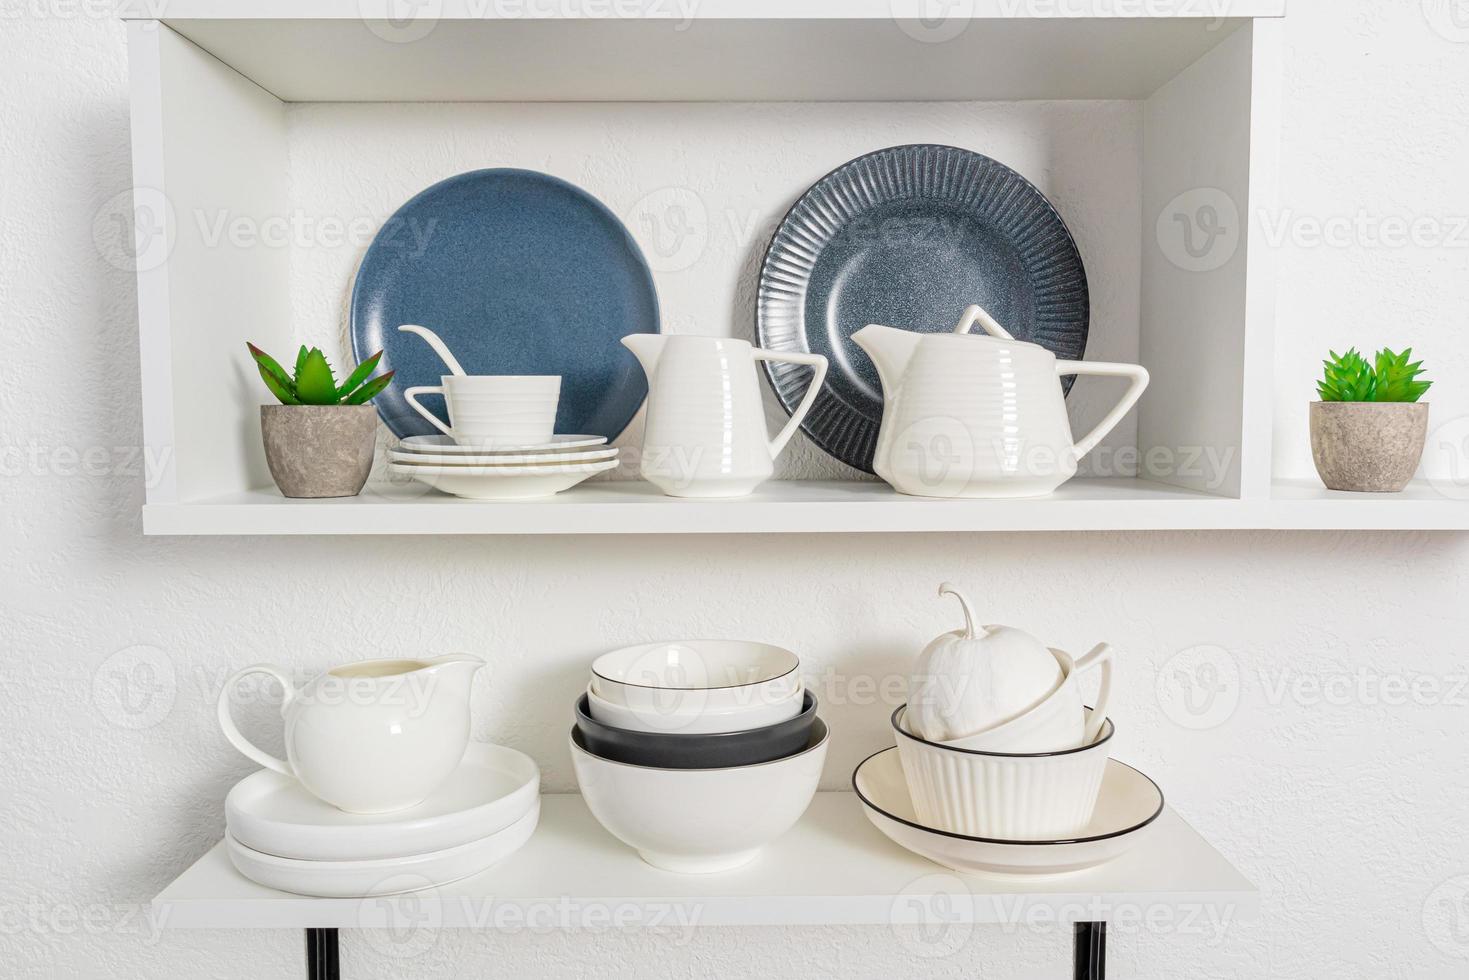 voorgrond visie, detailopname van Open keuken schappen met porselein en keramisch gebruiksvoorwerpen. elegant keuken achtergrond in wit tonen. foto